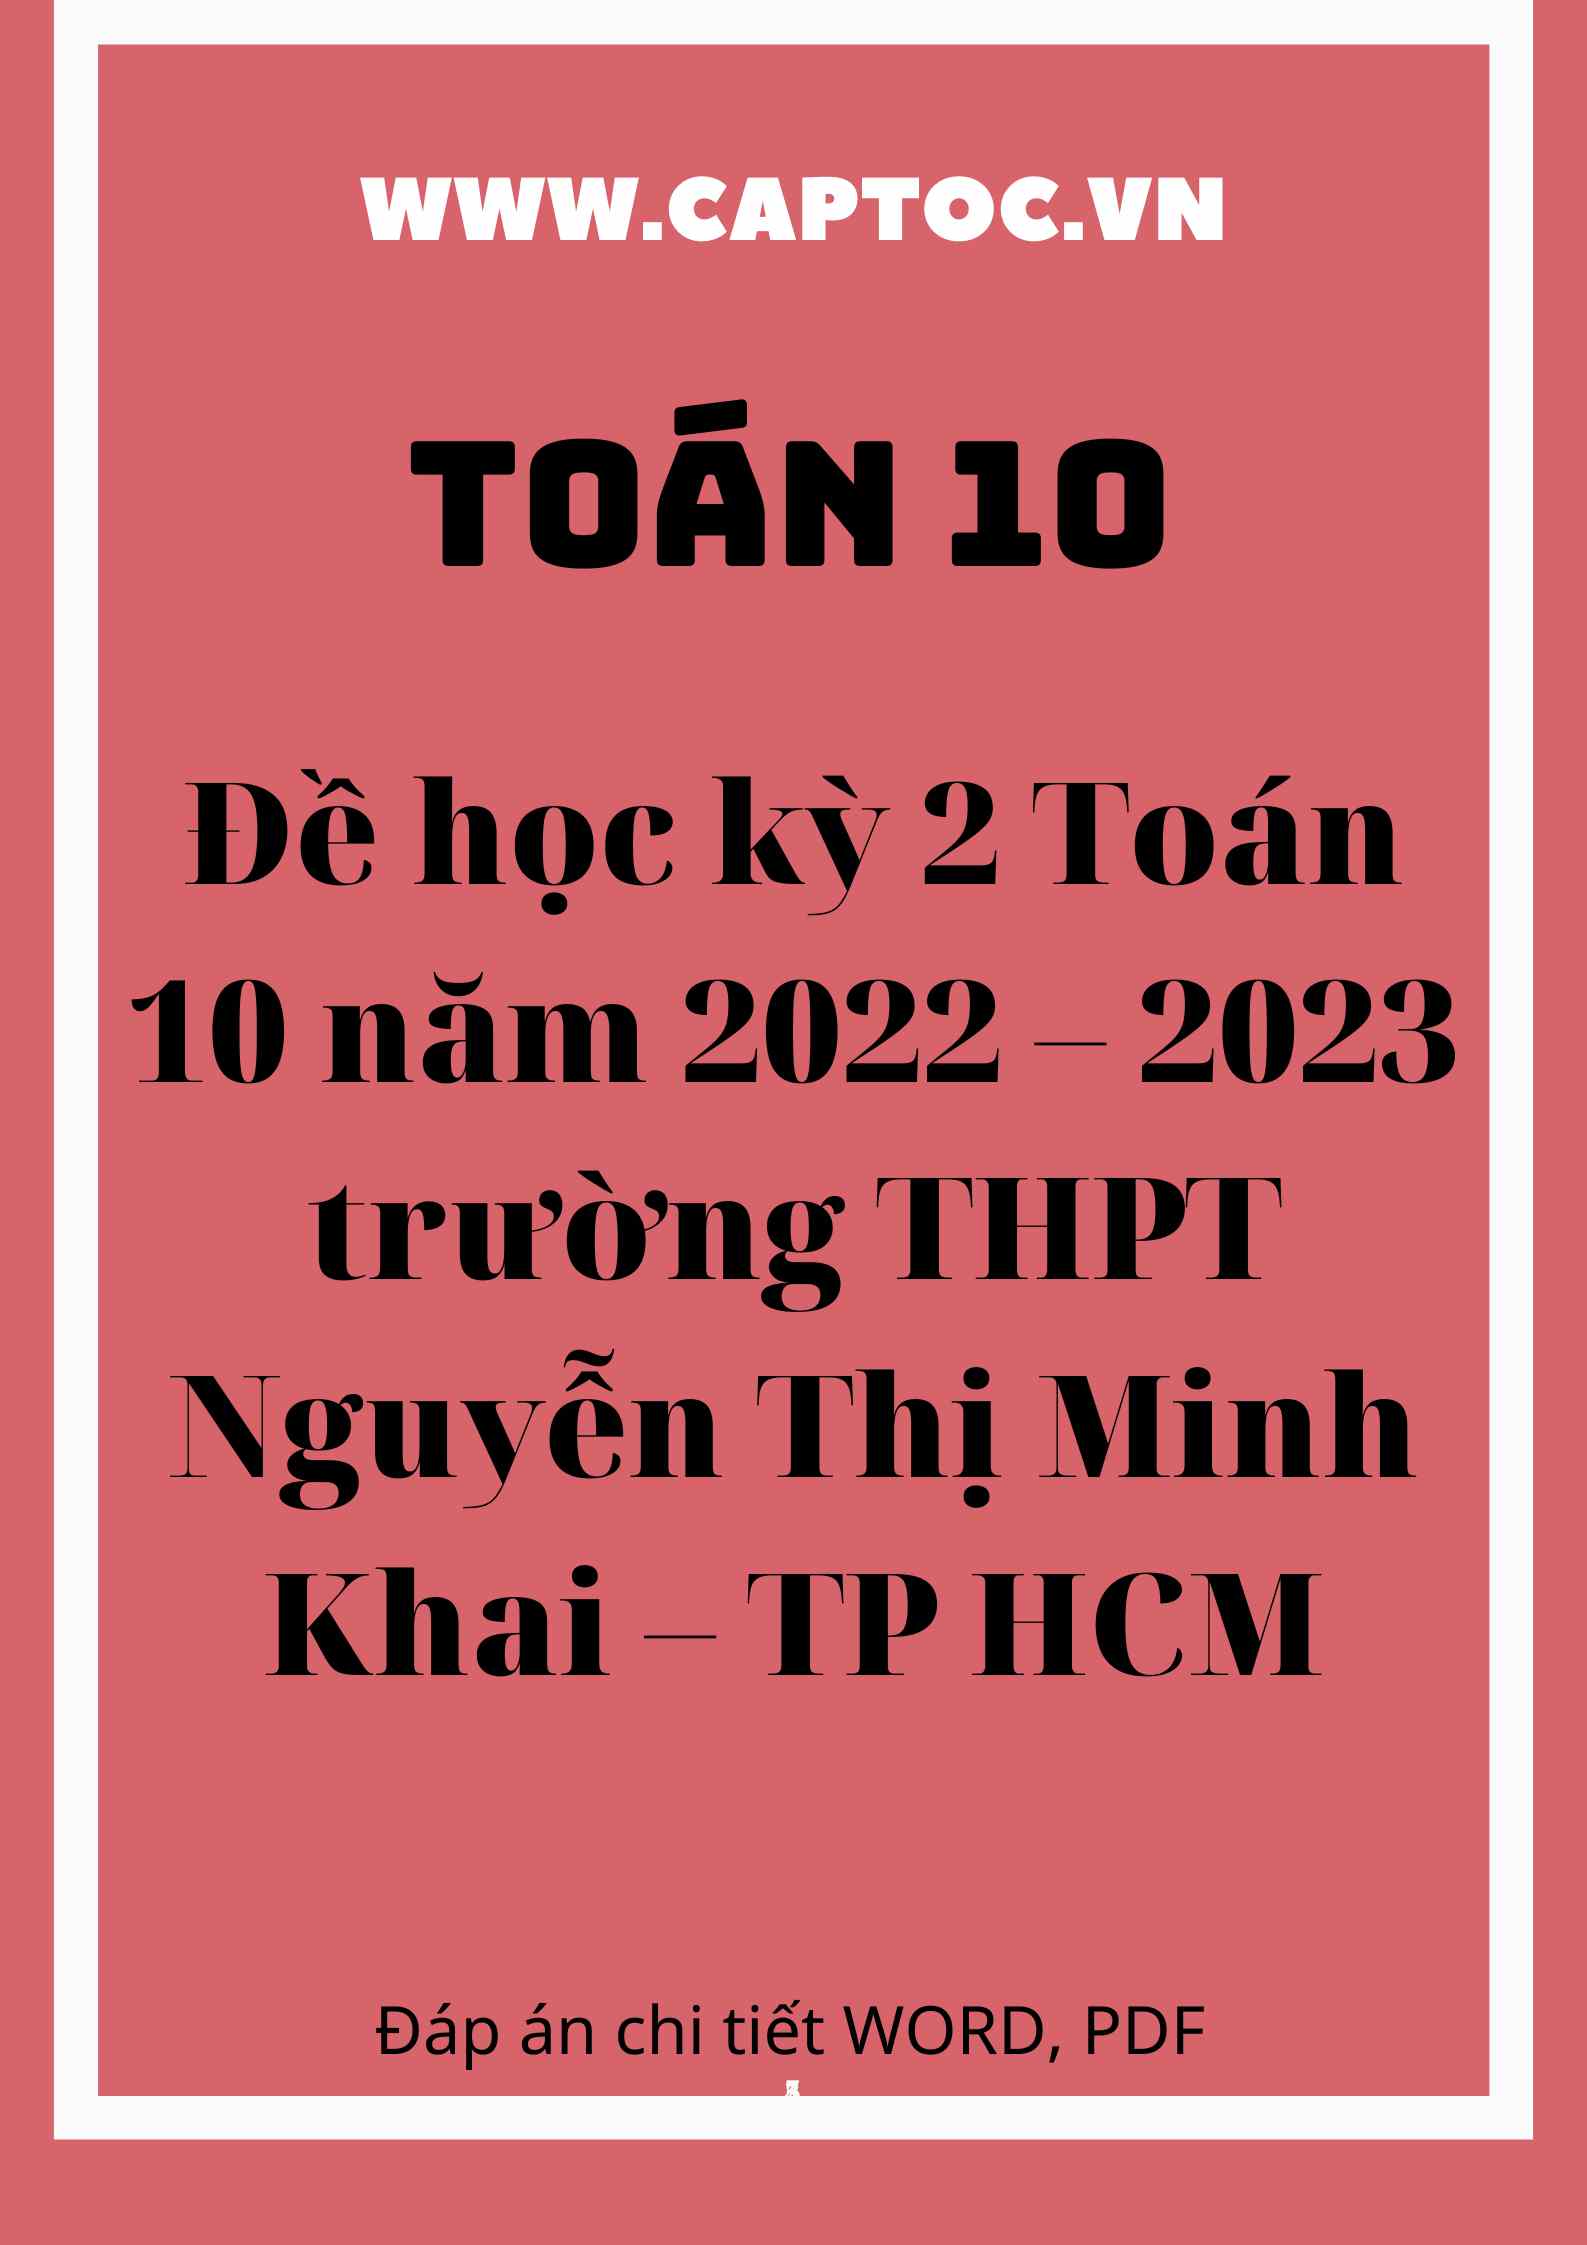 Đề học kỳ 2 Toán 10 năm 2022 – 2023 trường THPT Nguyễn Thị Minh Khai – TP HCM